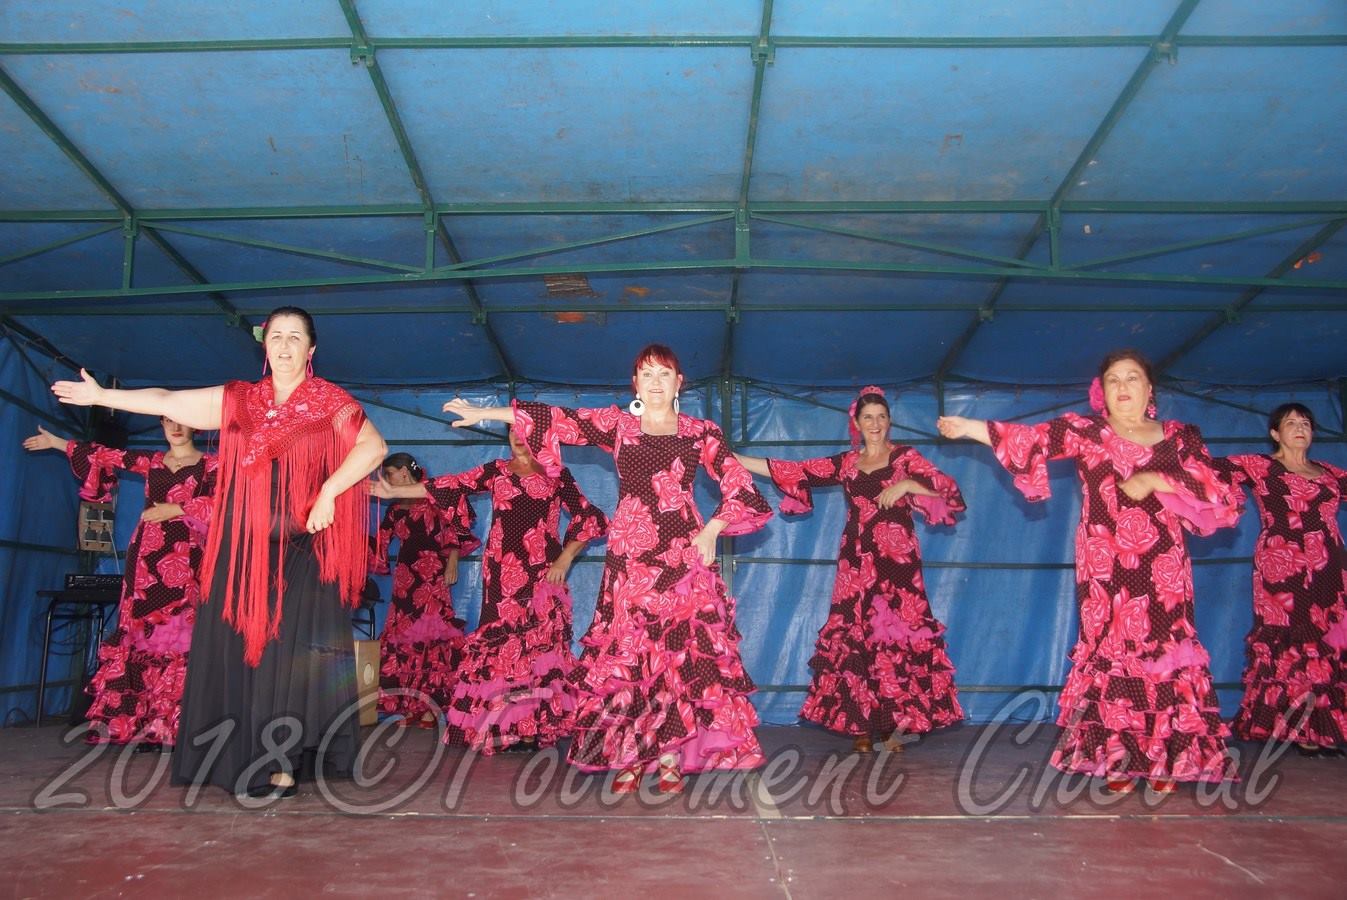 Spectacle-Danses-trad.-Espagnoles-Mexicaines-troupe-ABailar©2018FCpcpc (1)